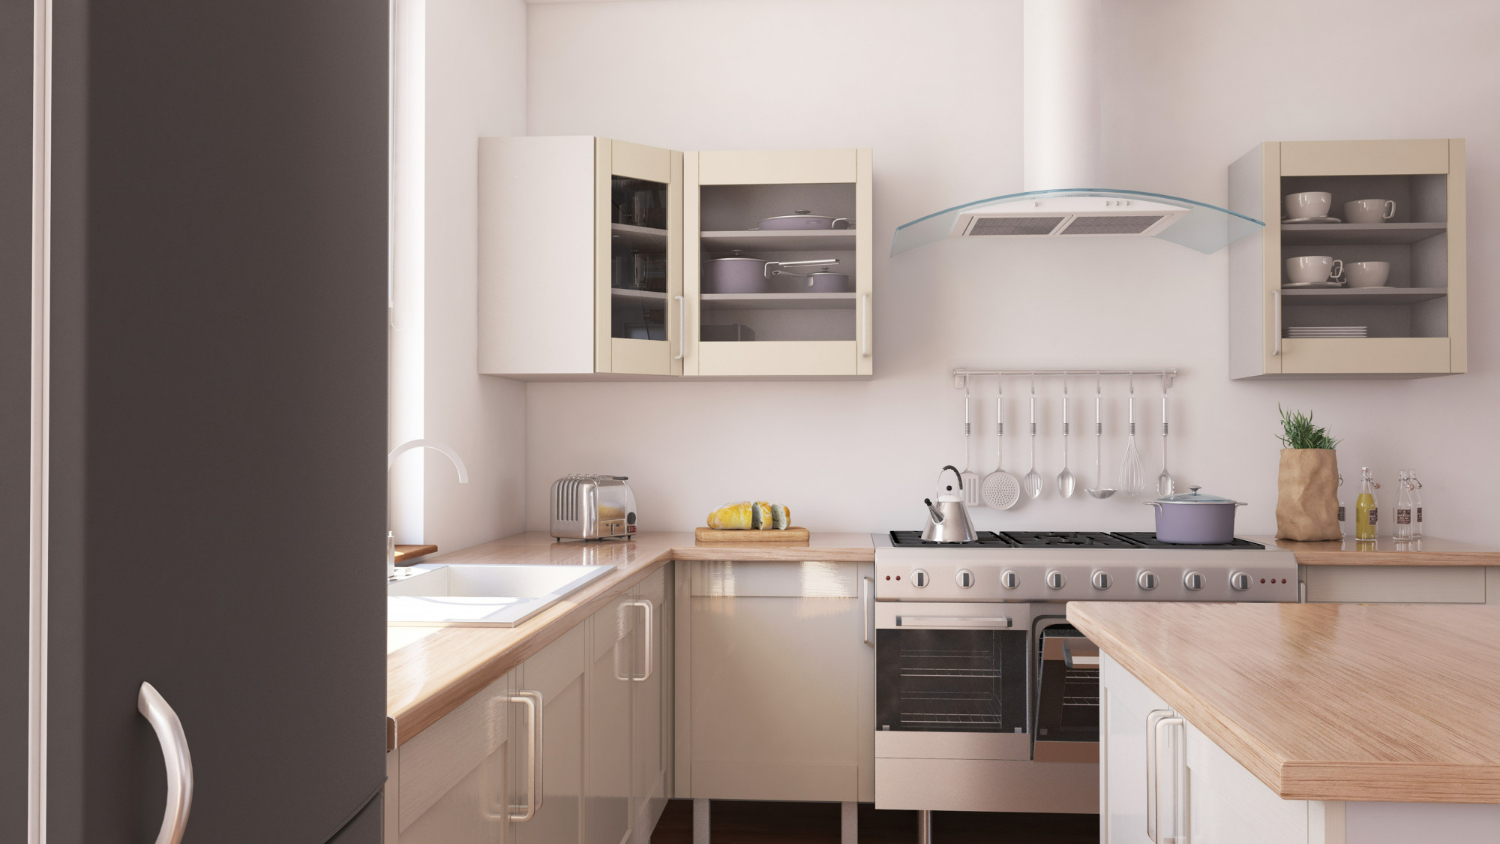 new designed kitchen with kitchen appliances